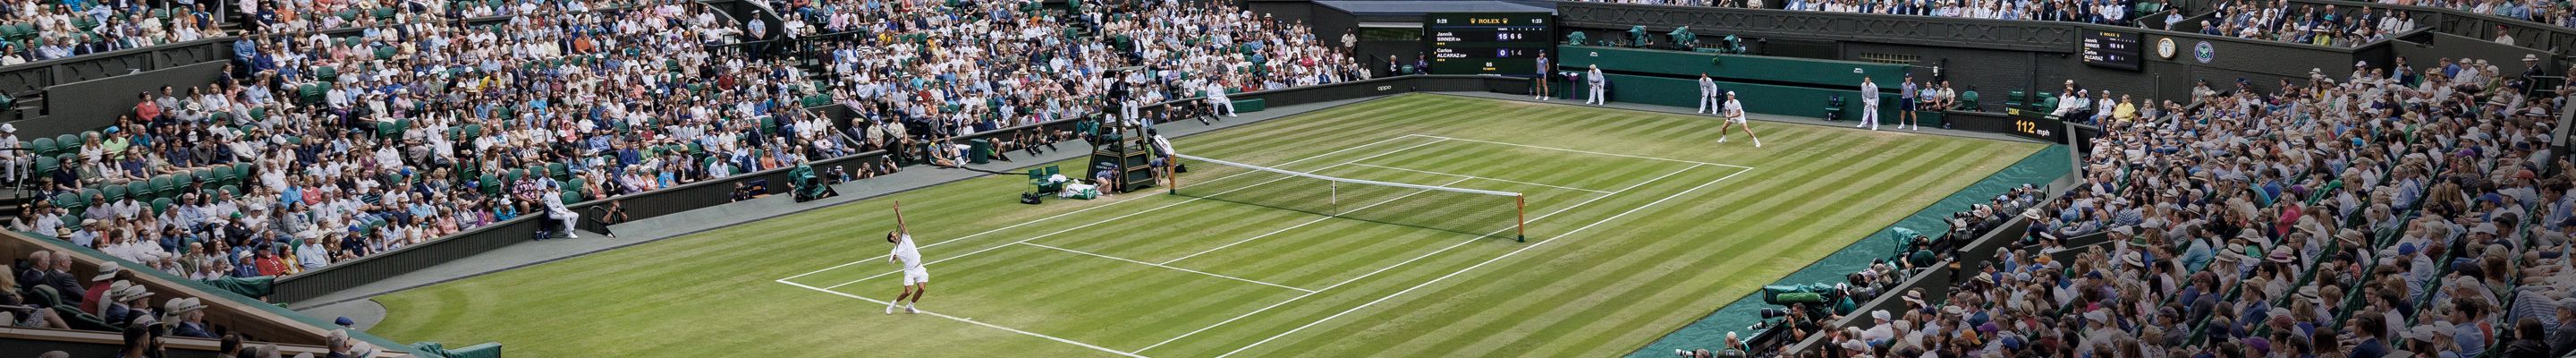 Rolex ist seit 1978 Partner der Championships, Wimbledon.